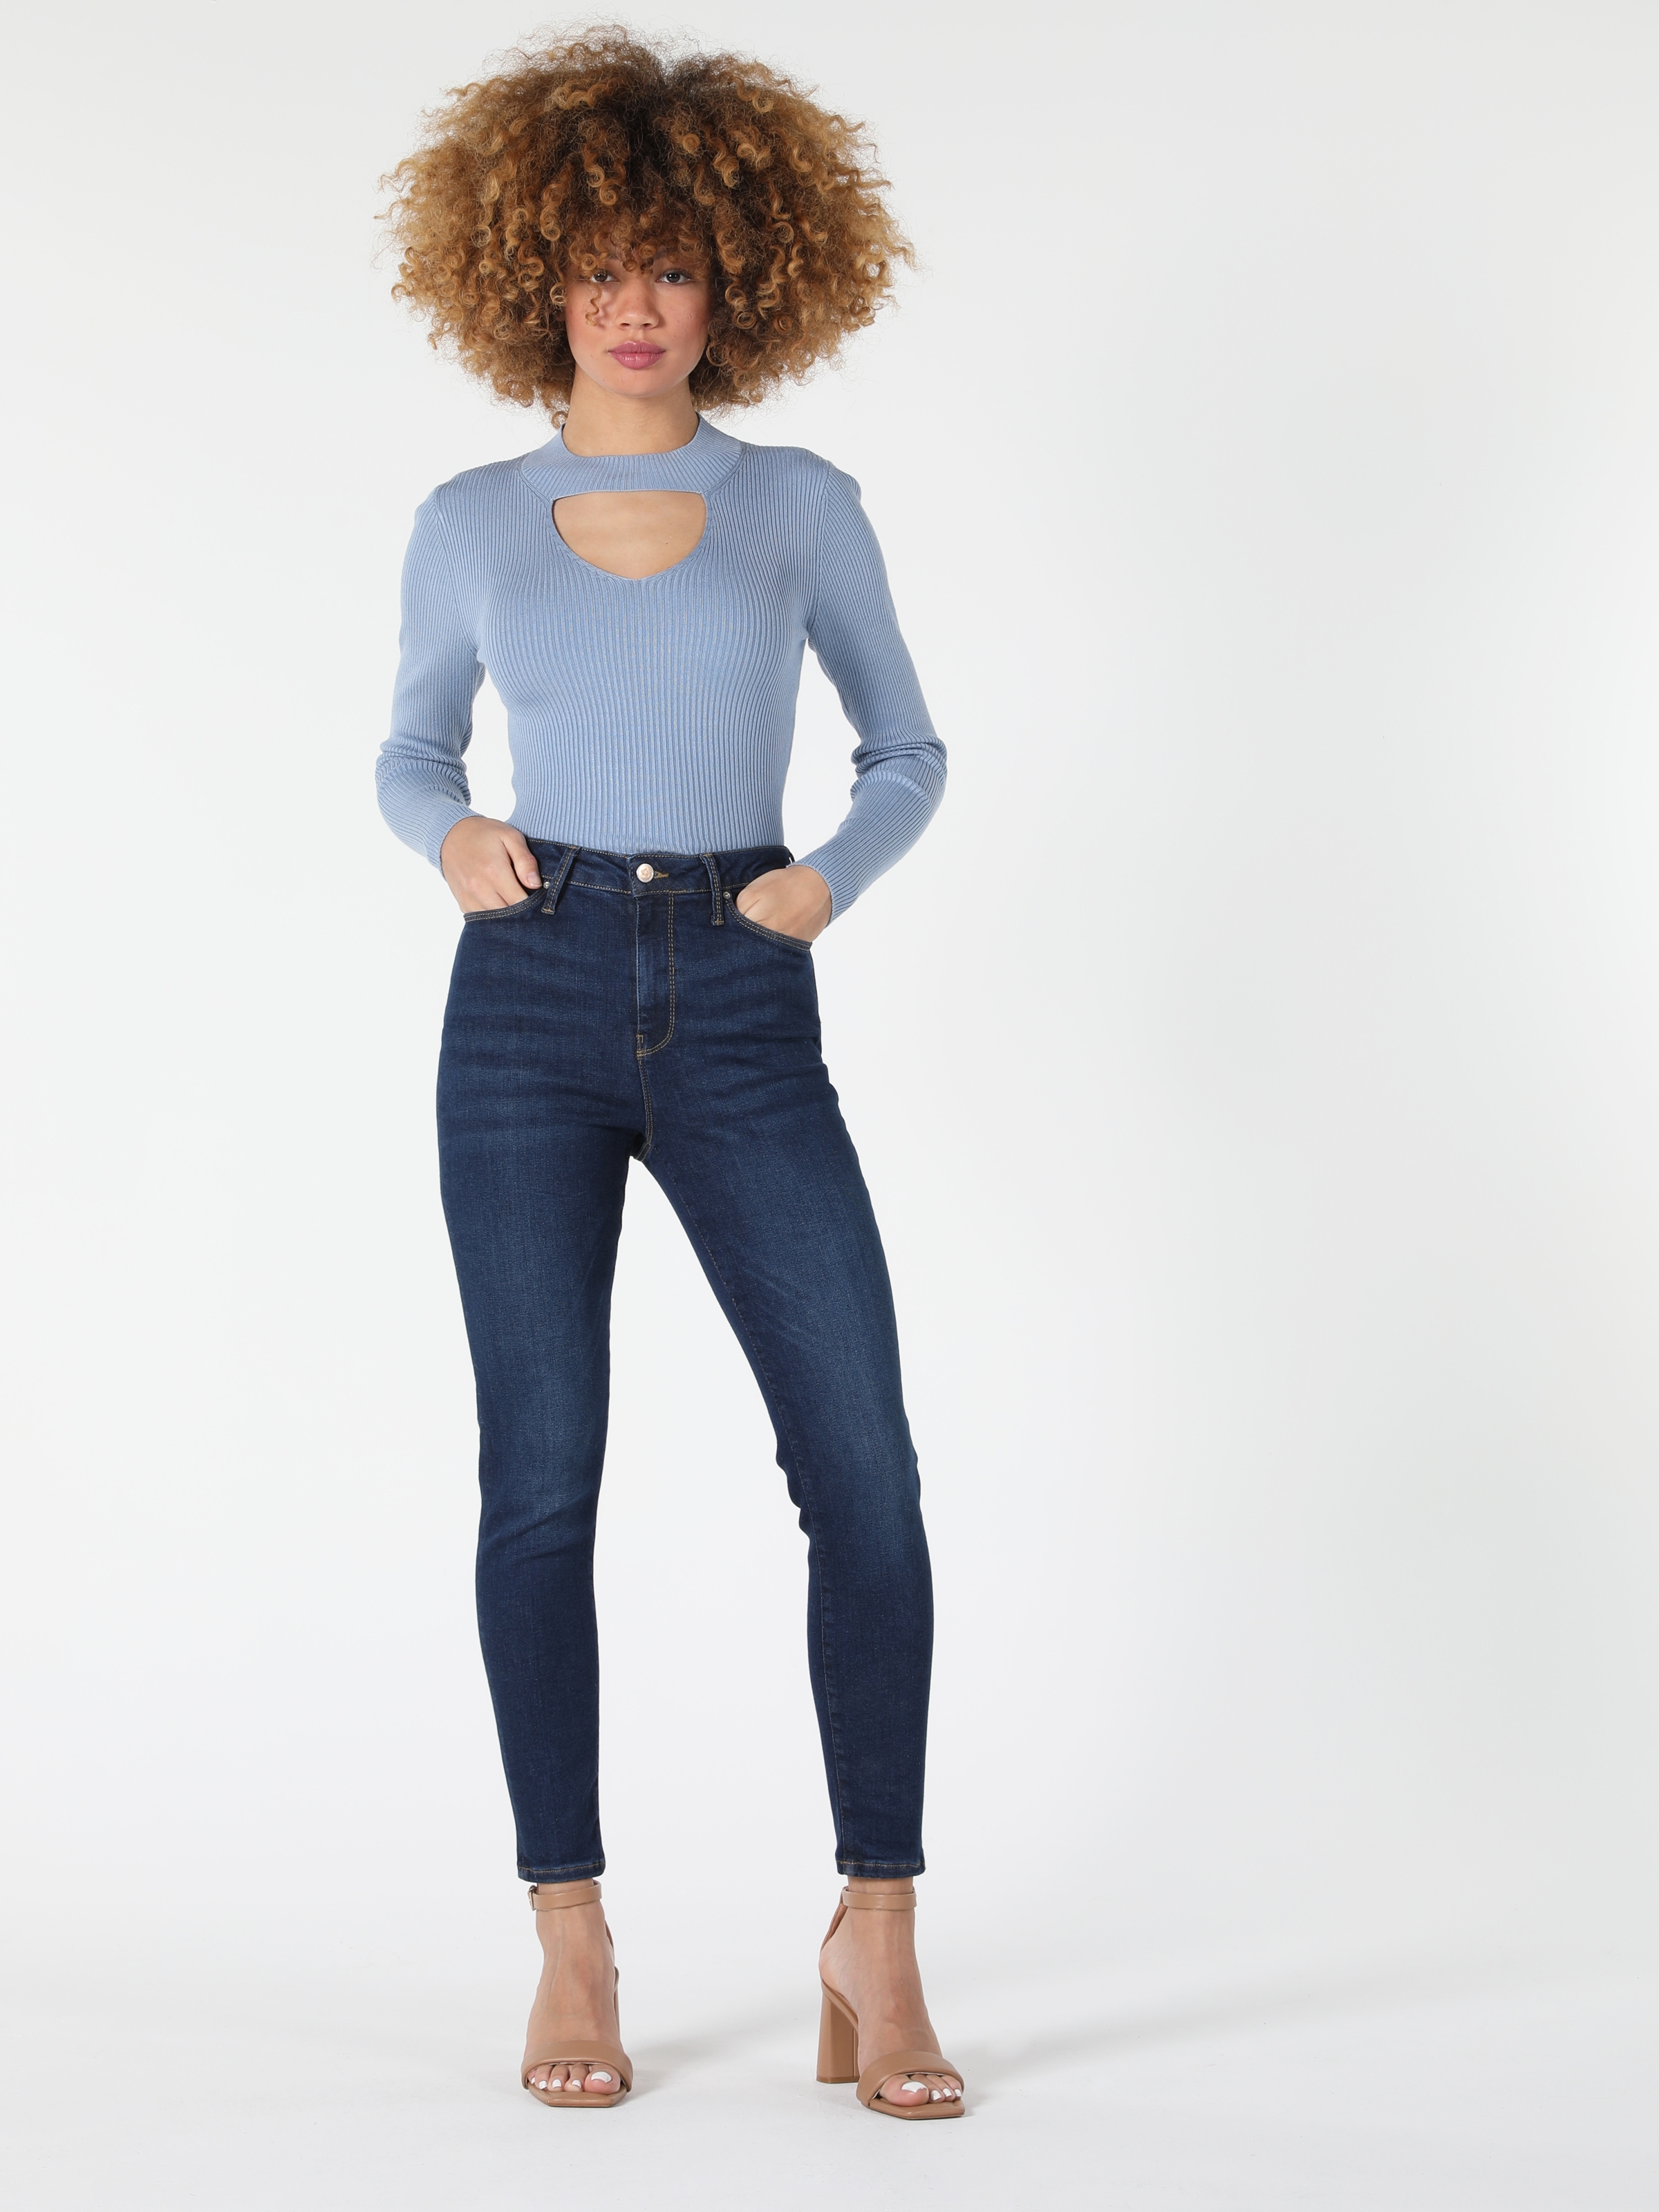 Afficher les détails de Selfsızed 760 Diana Pantalon Taille Haute Coupe Super Slim Jambe Skinny Bleu Pour Femme